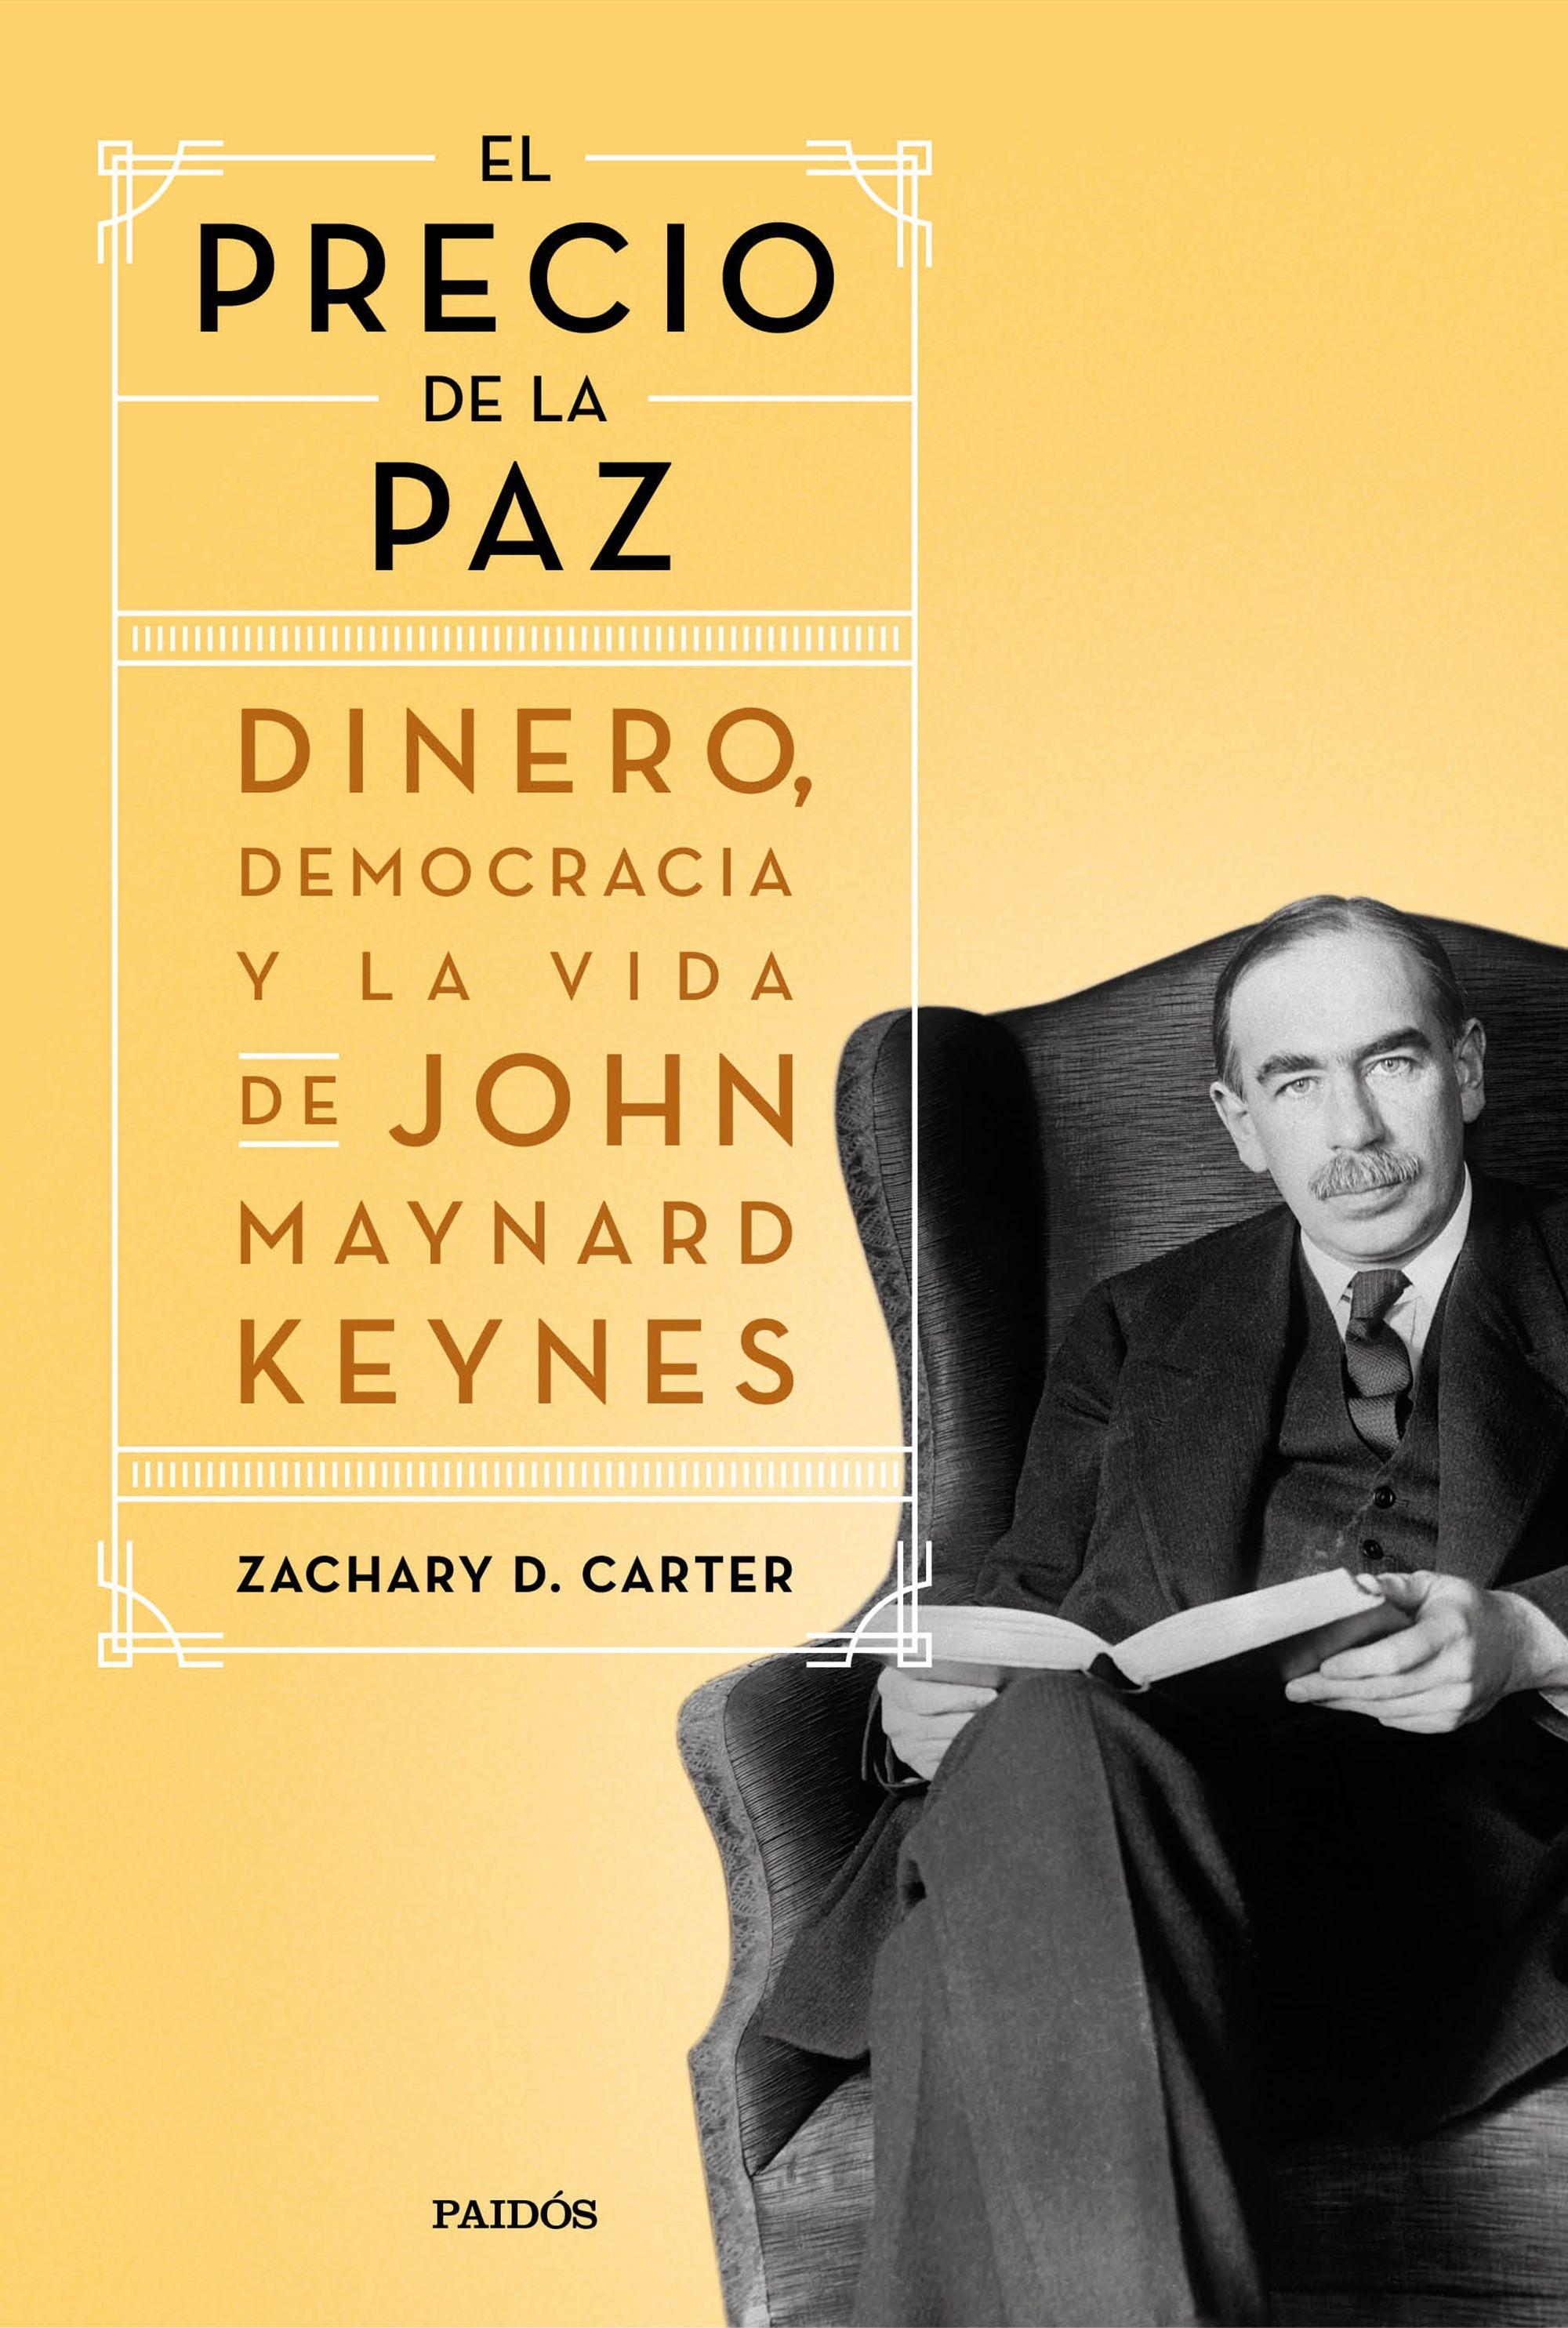 El precio de la paz "Dinero, democracia y la vida de John Maynard Keynes". 